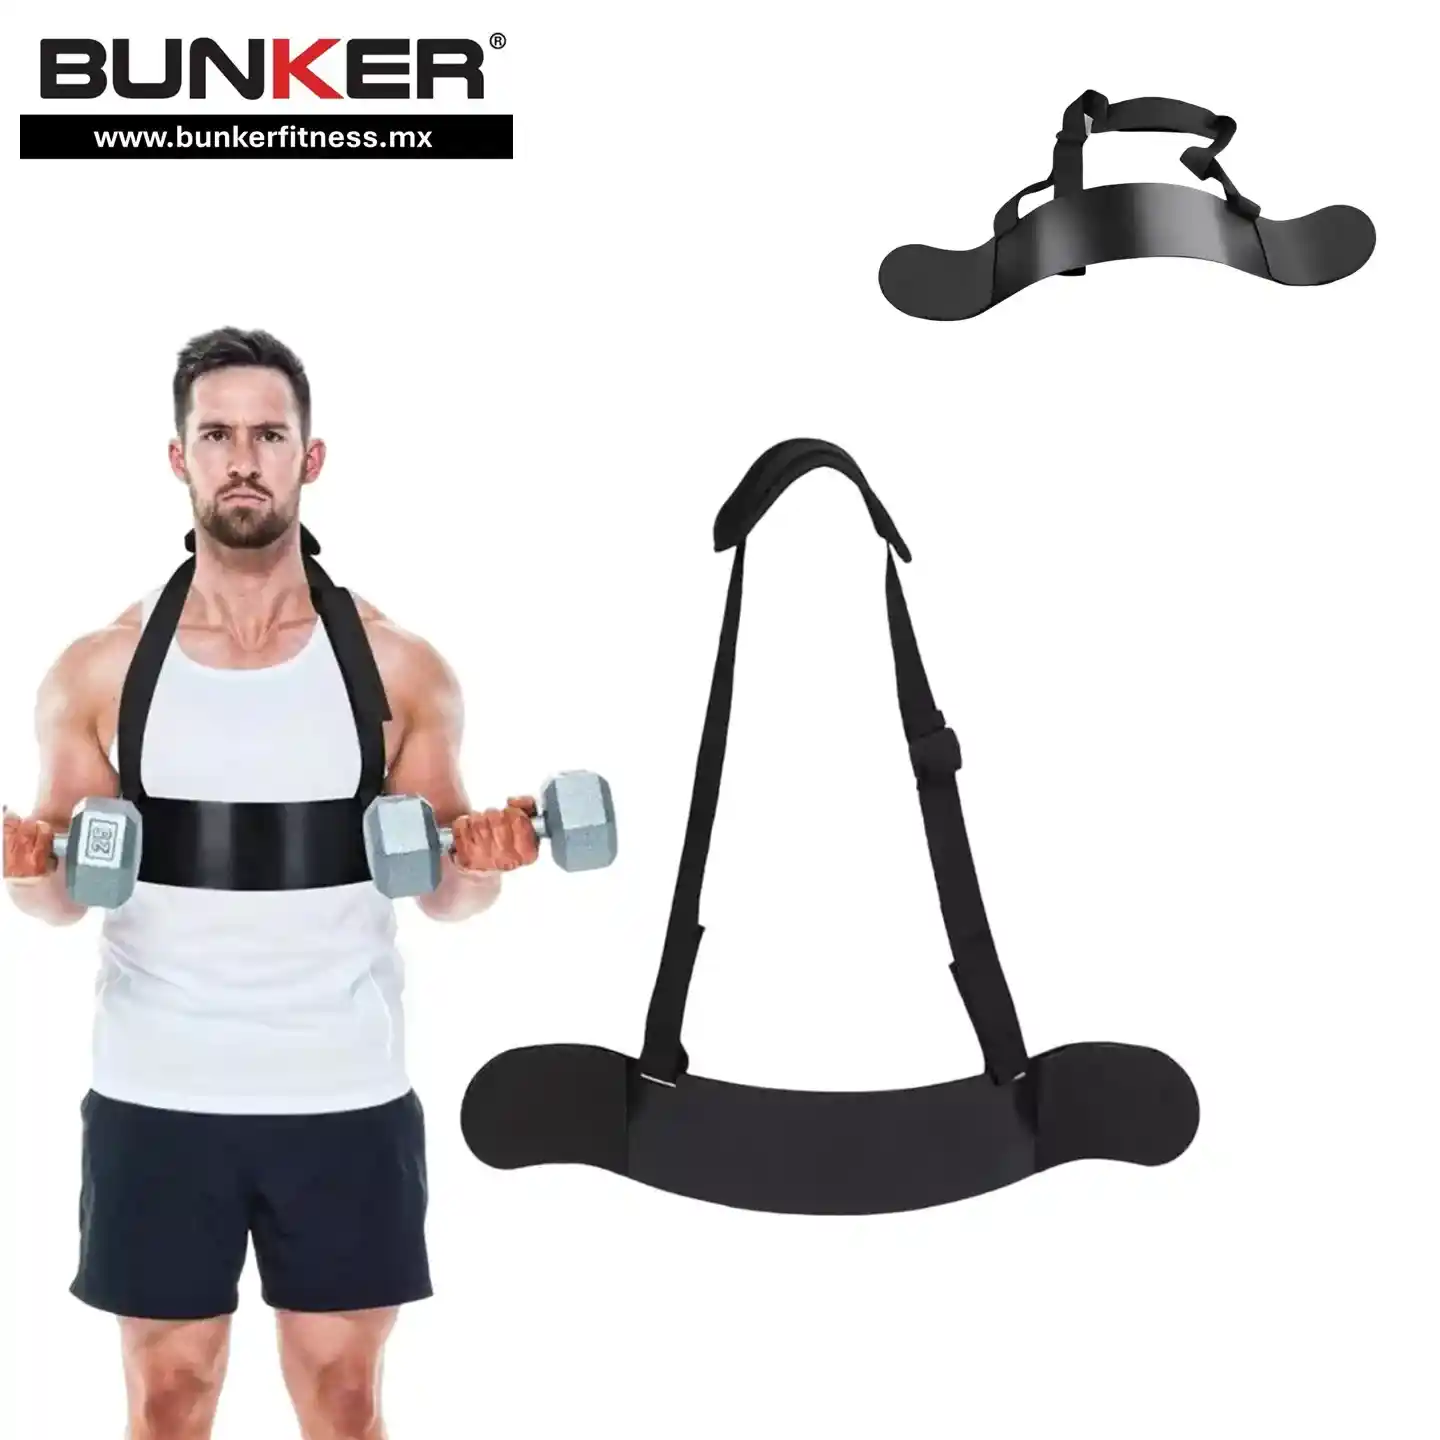 accesorio bicep bumper deportistas para ejercicio y gimnasio en casa bunker gym bunker fitness